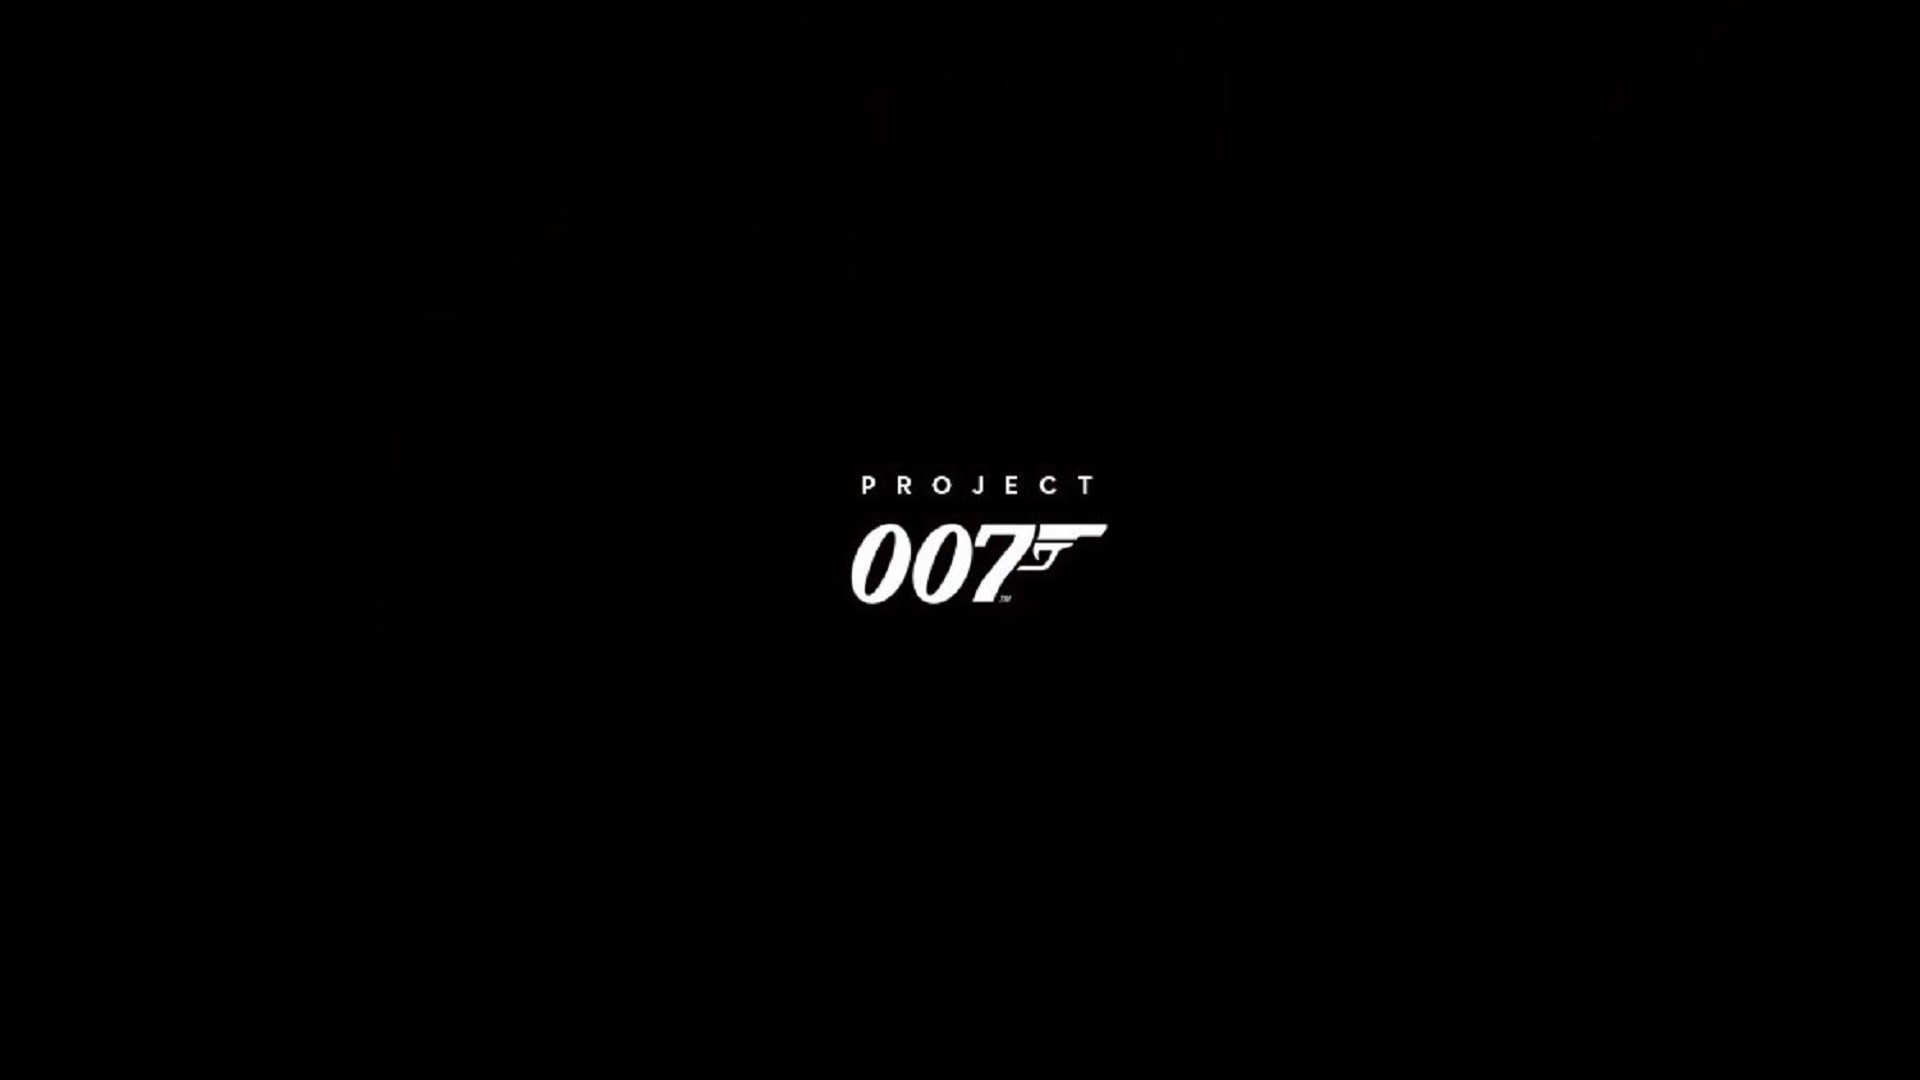 شایعه: گیم‌پلی بازی Project 007 ترکیبی از اول شخص و سوم شخص خواهد بود